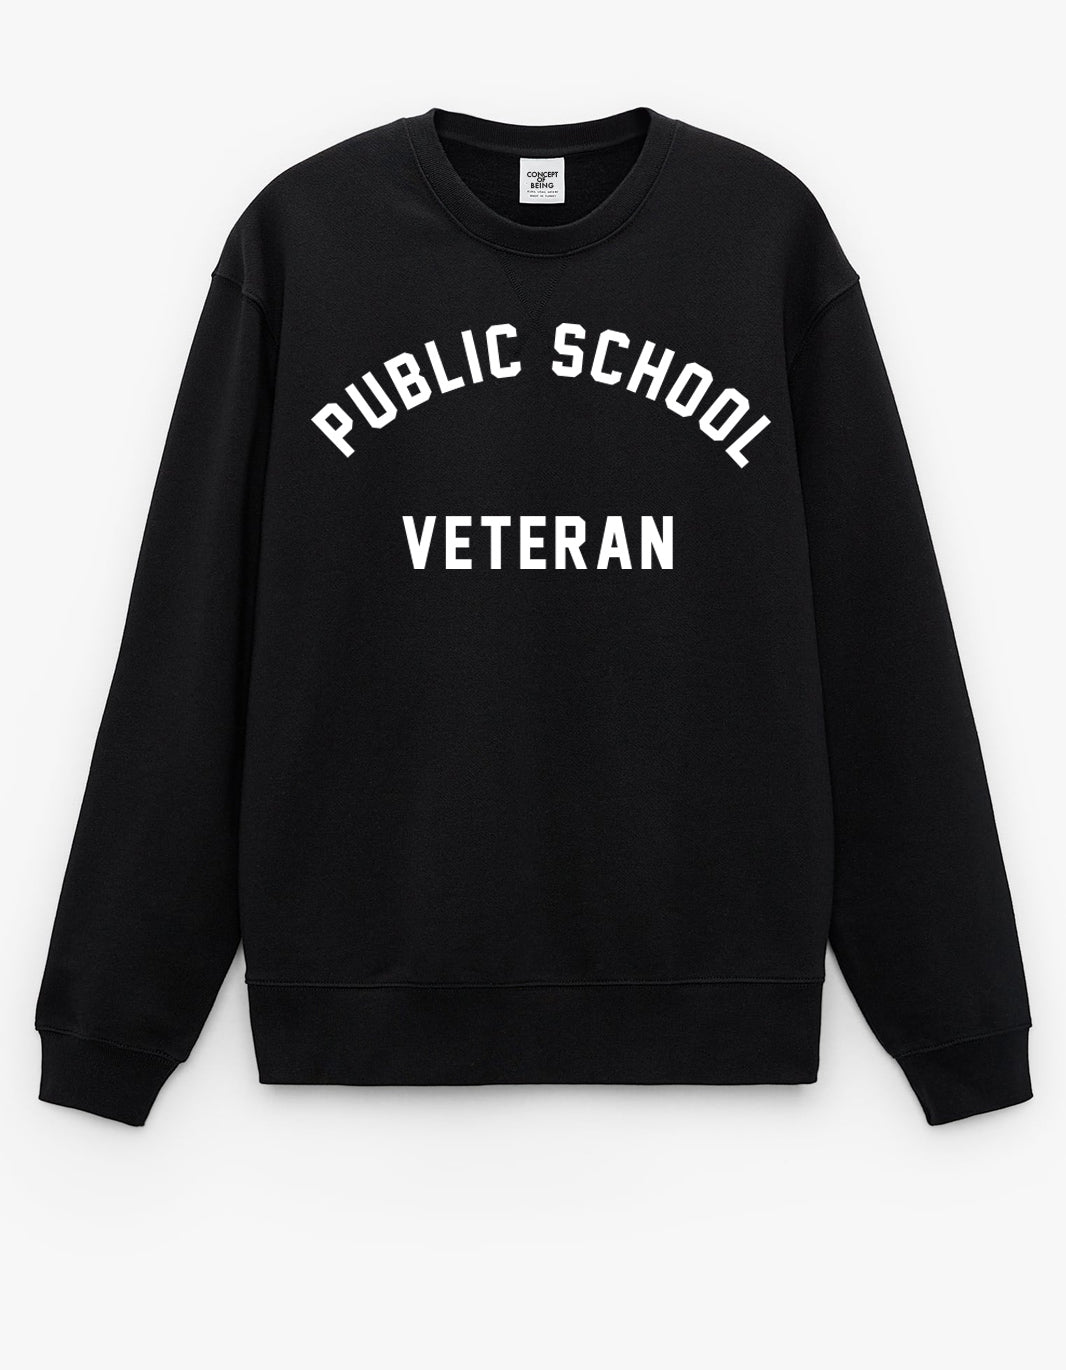 Public School Veteran Sweatshirt